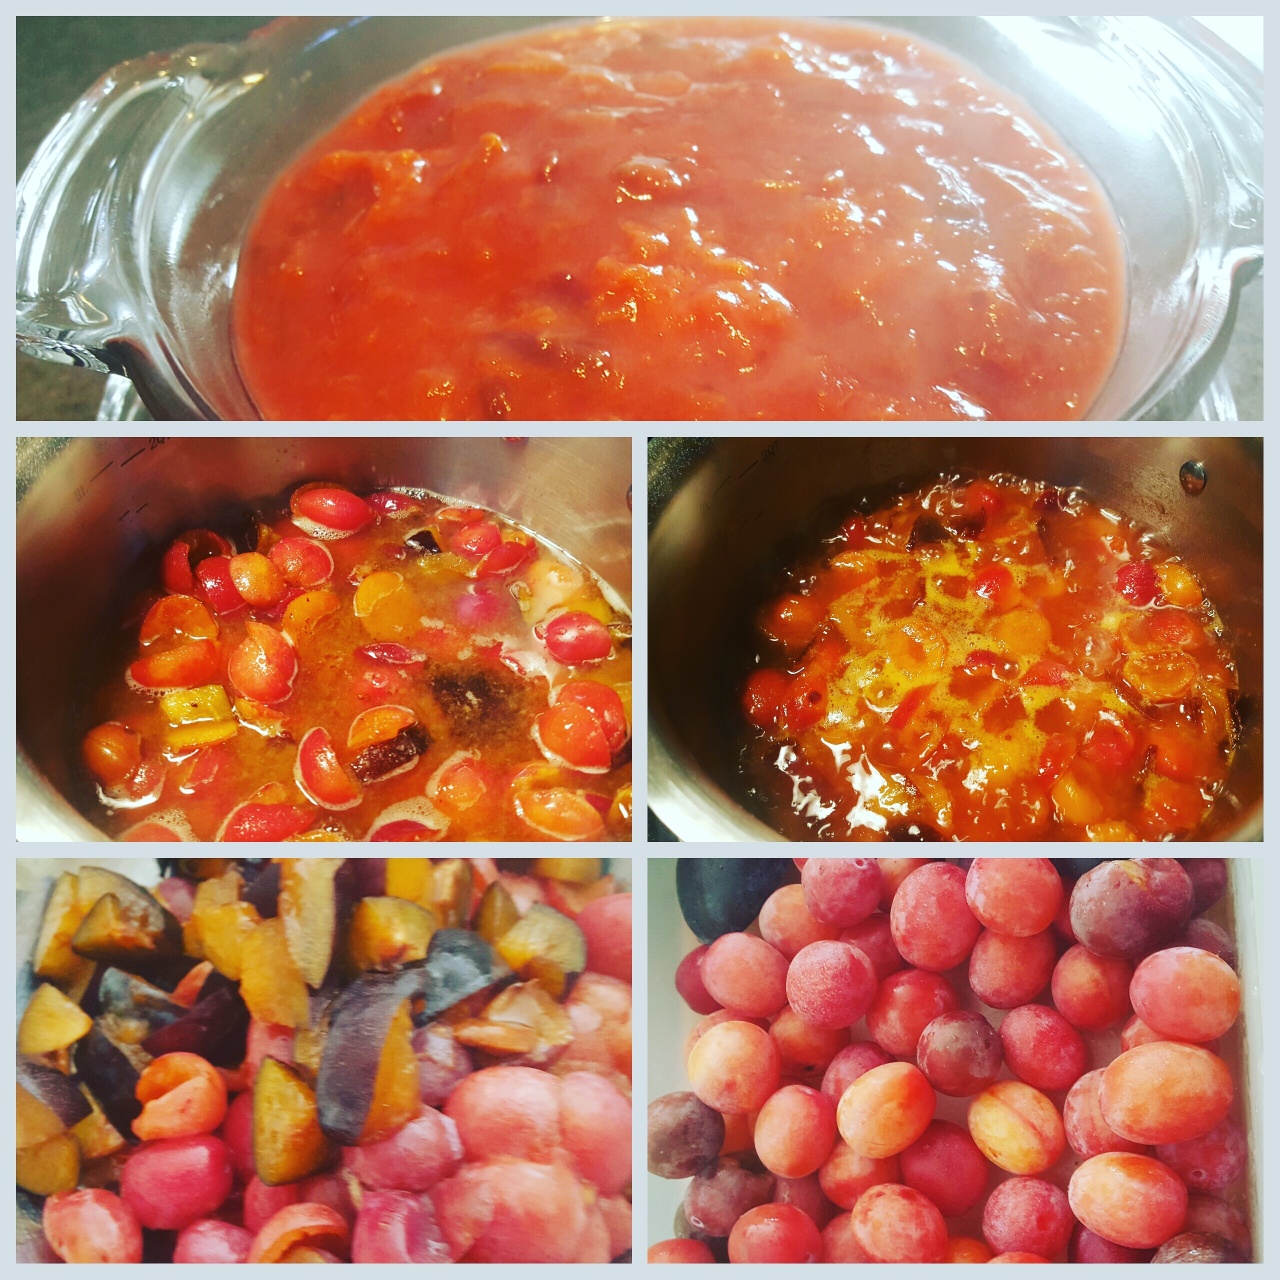 harvest-homemade-prune-jam